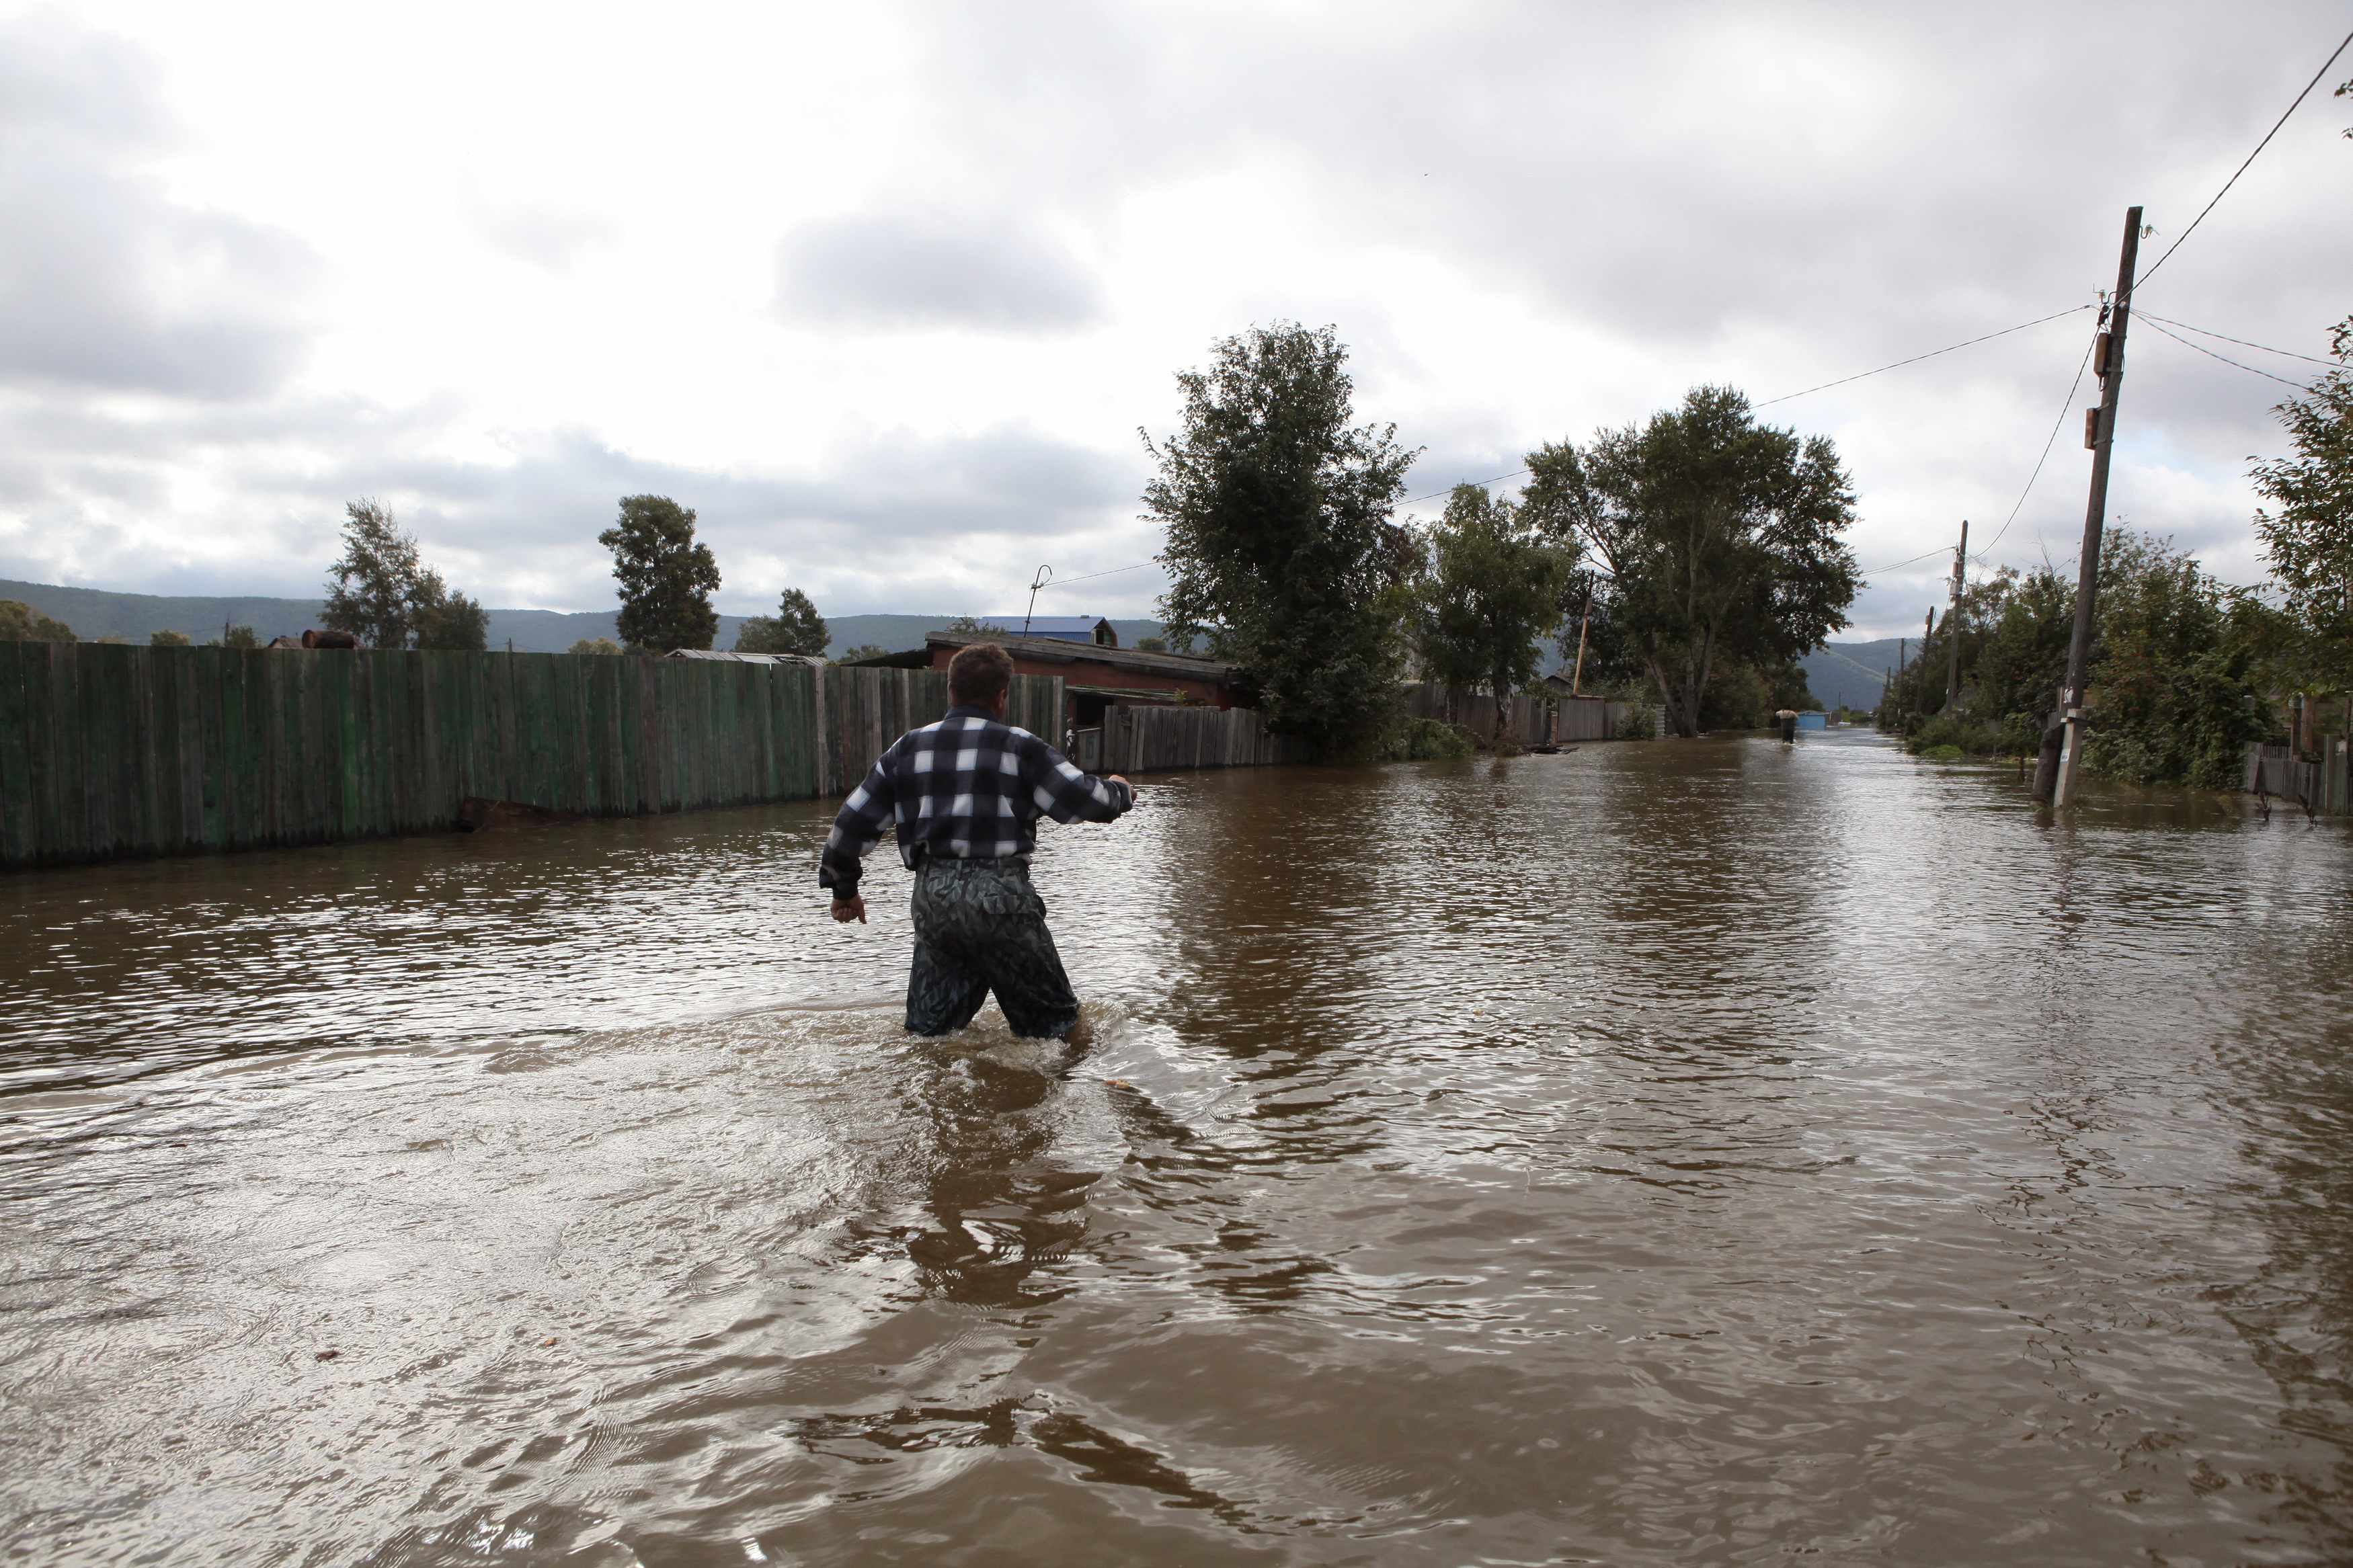 “Οι πλημμύρες στη Σερβία αποτελούν προειδοποίηση της φύσης”, τονίστηκε σε συνέδριο